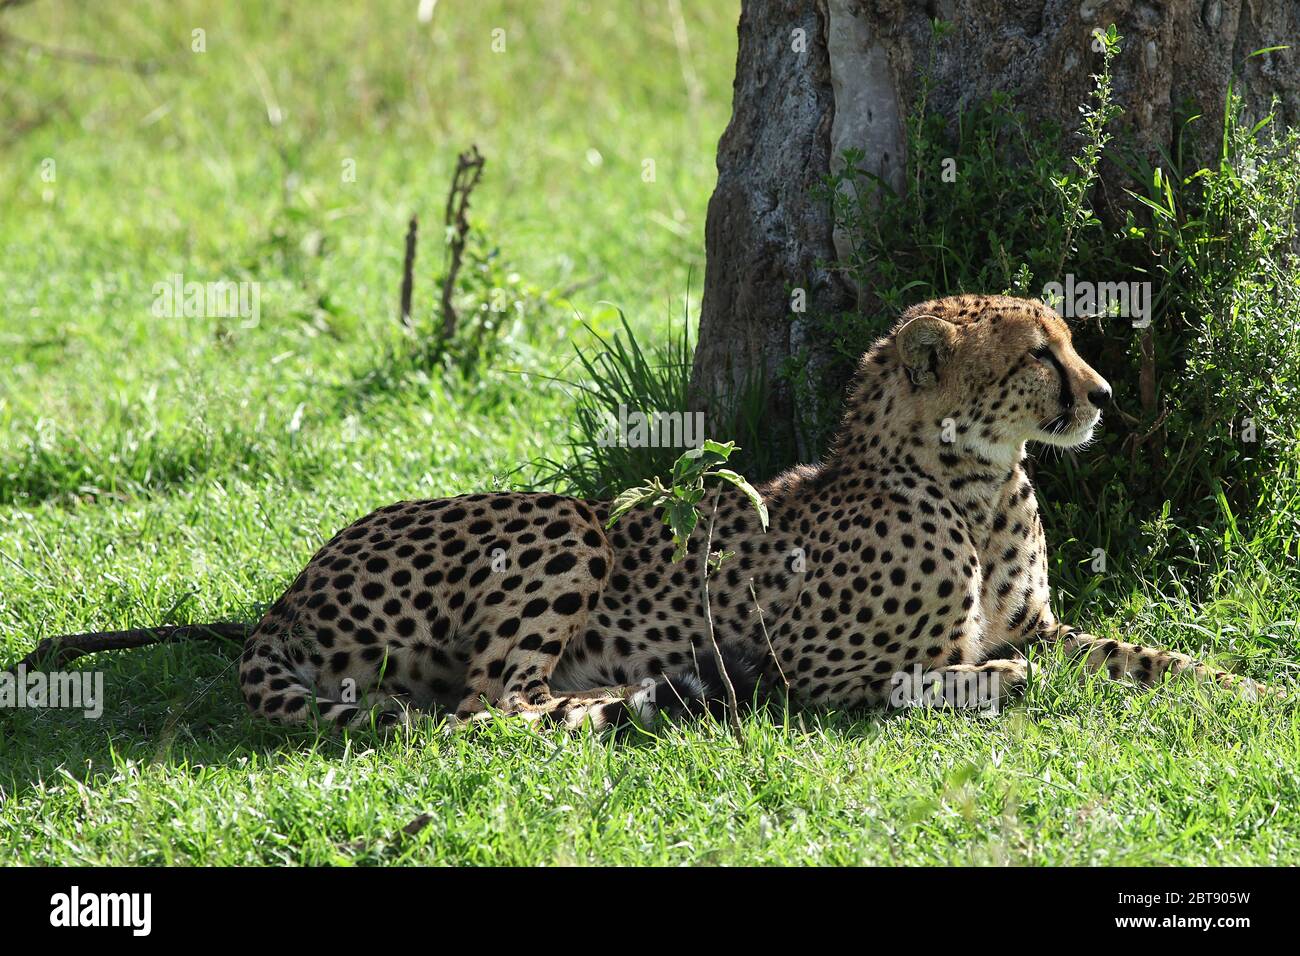 Les frères Cheetah sont dans l'herbe verte de la savane kenyane sur un tronc d'arbre et découvrent une proie possible au loin Banque D'Images